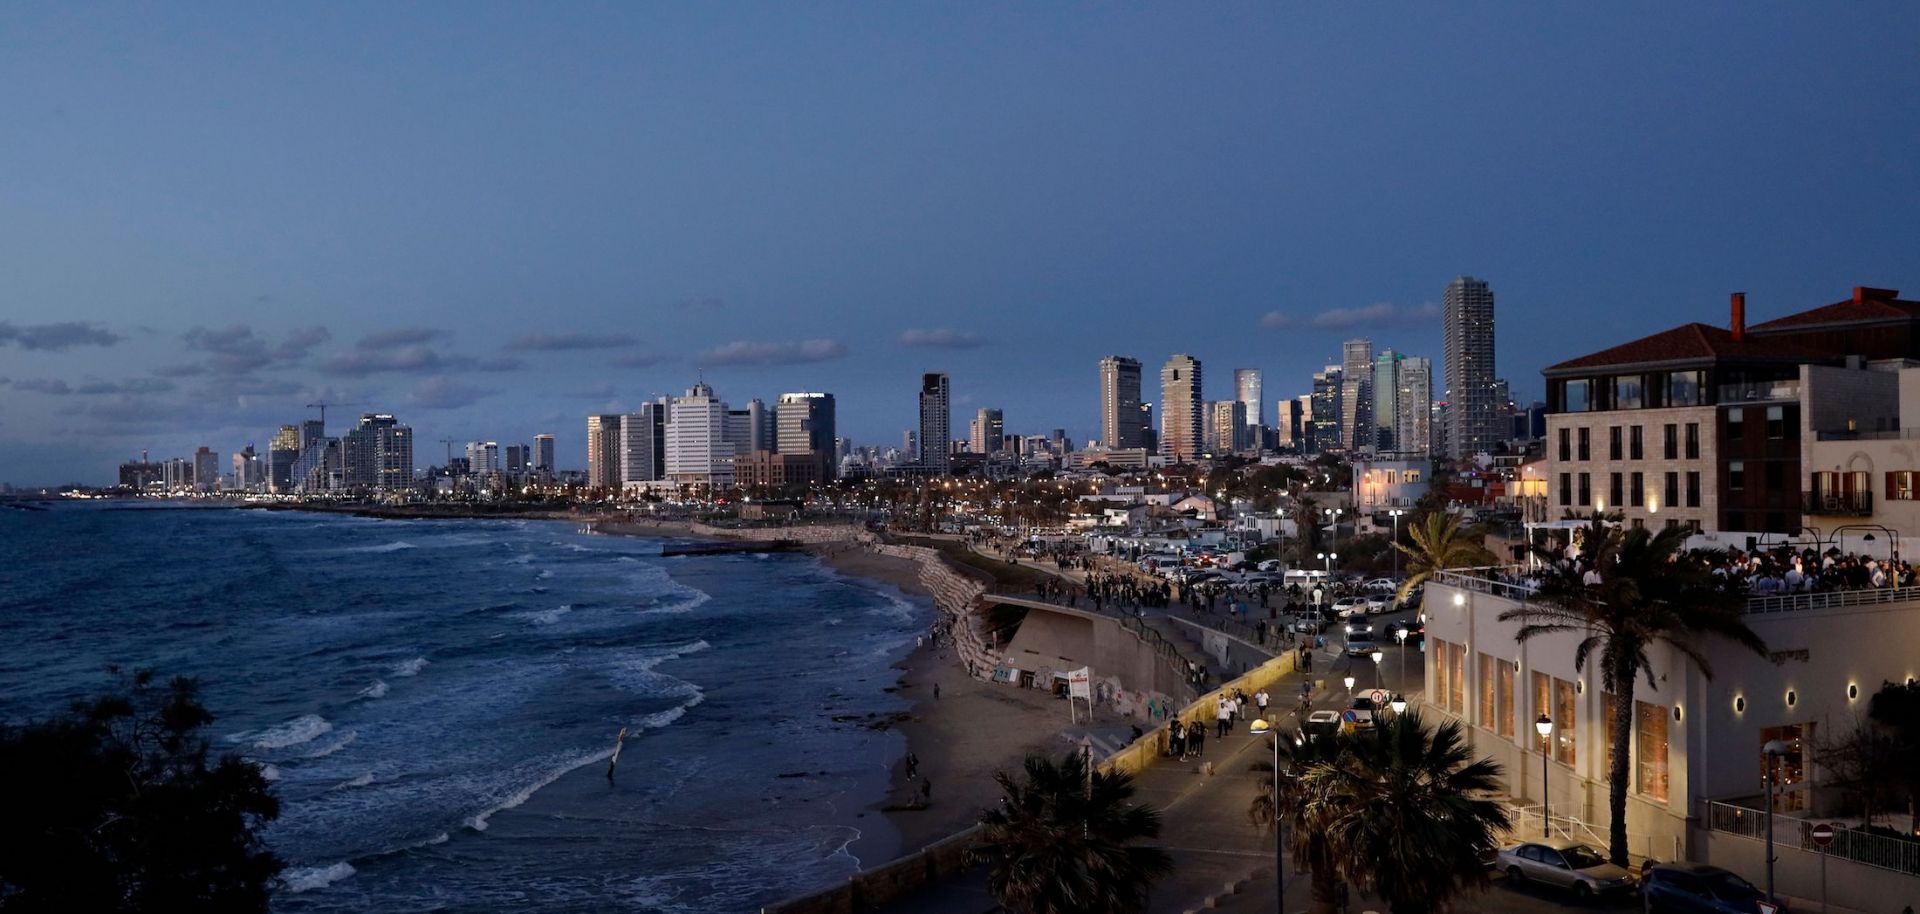 Tel Aviv’s skyline